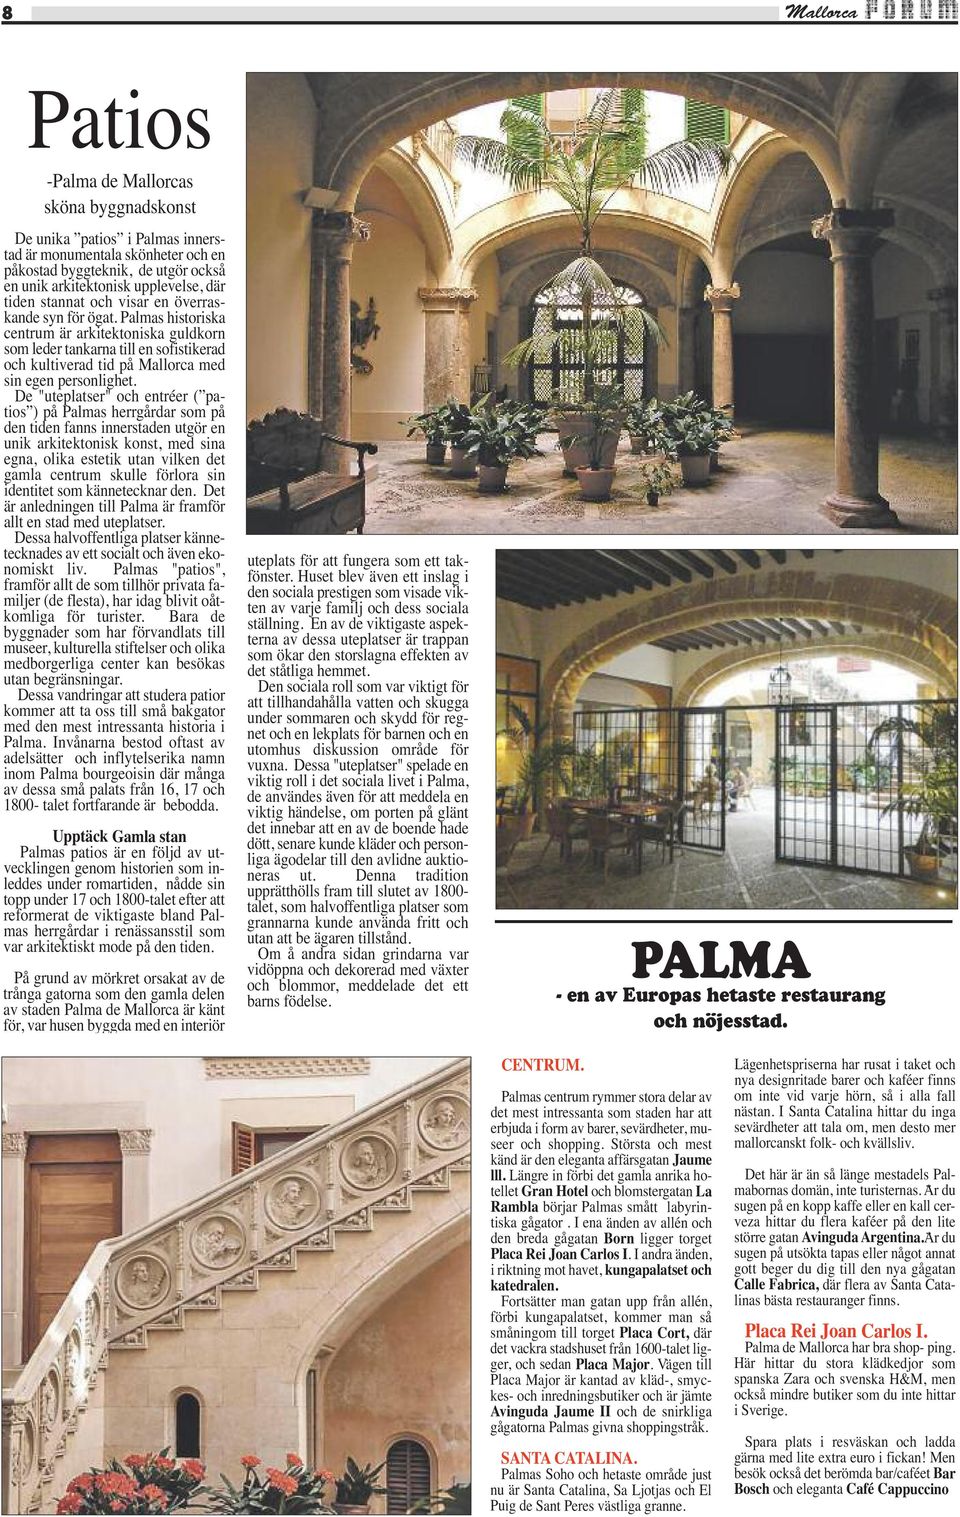 Palmas historiska centrum är arkitektoniska guldkorn som leder tankarna till en sofistikerad och kultiverad tid på Mallorca med sin egen personlighet.